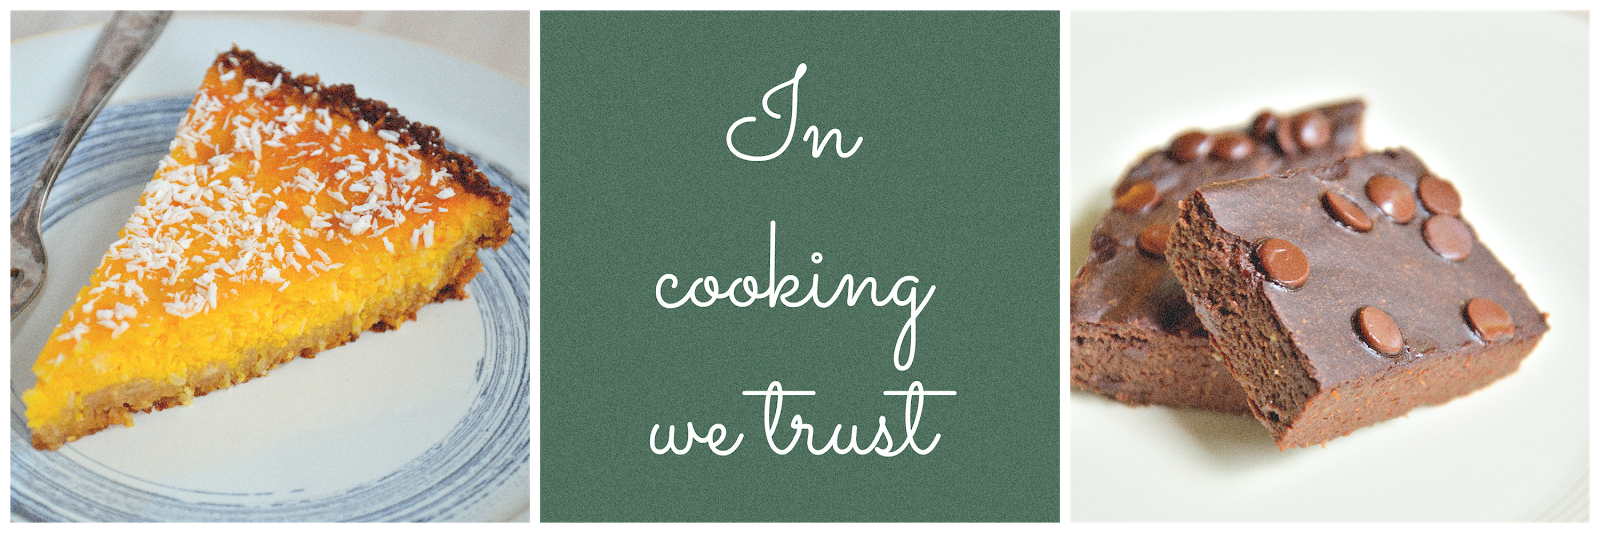 In cooking we trust